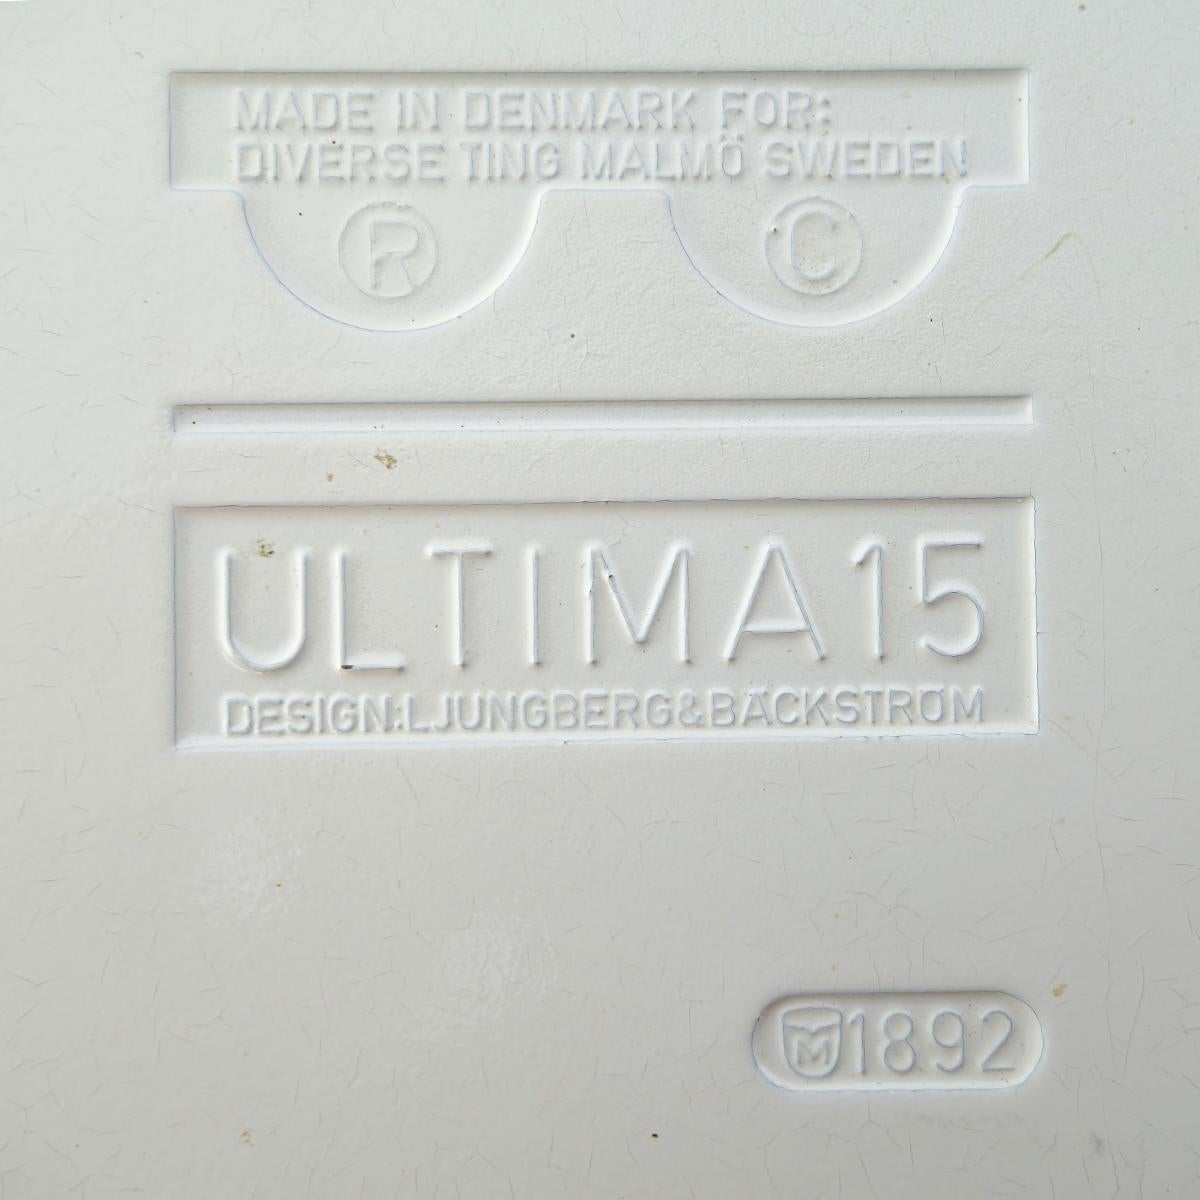 Cendrier Ultima15 de Backström & Ljungberg pour Diverse Ting (Suède) en vente 1